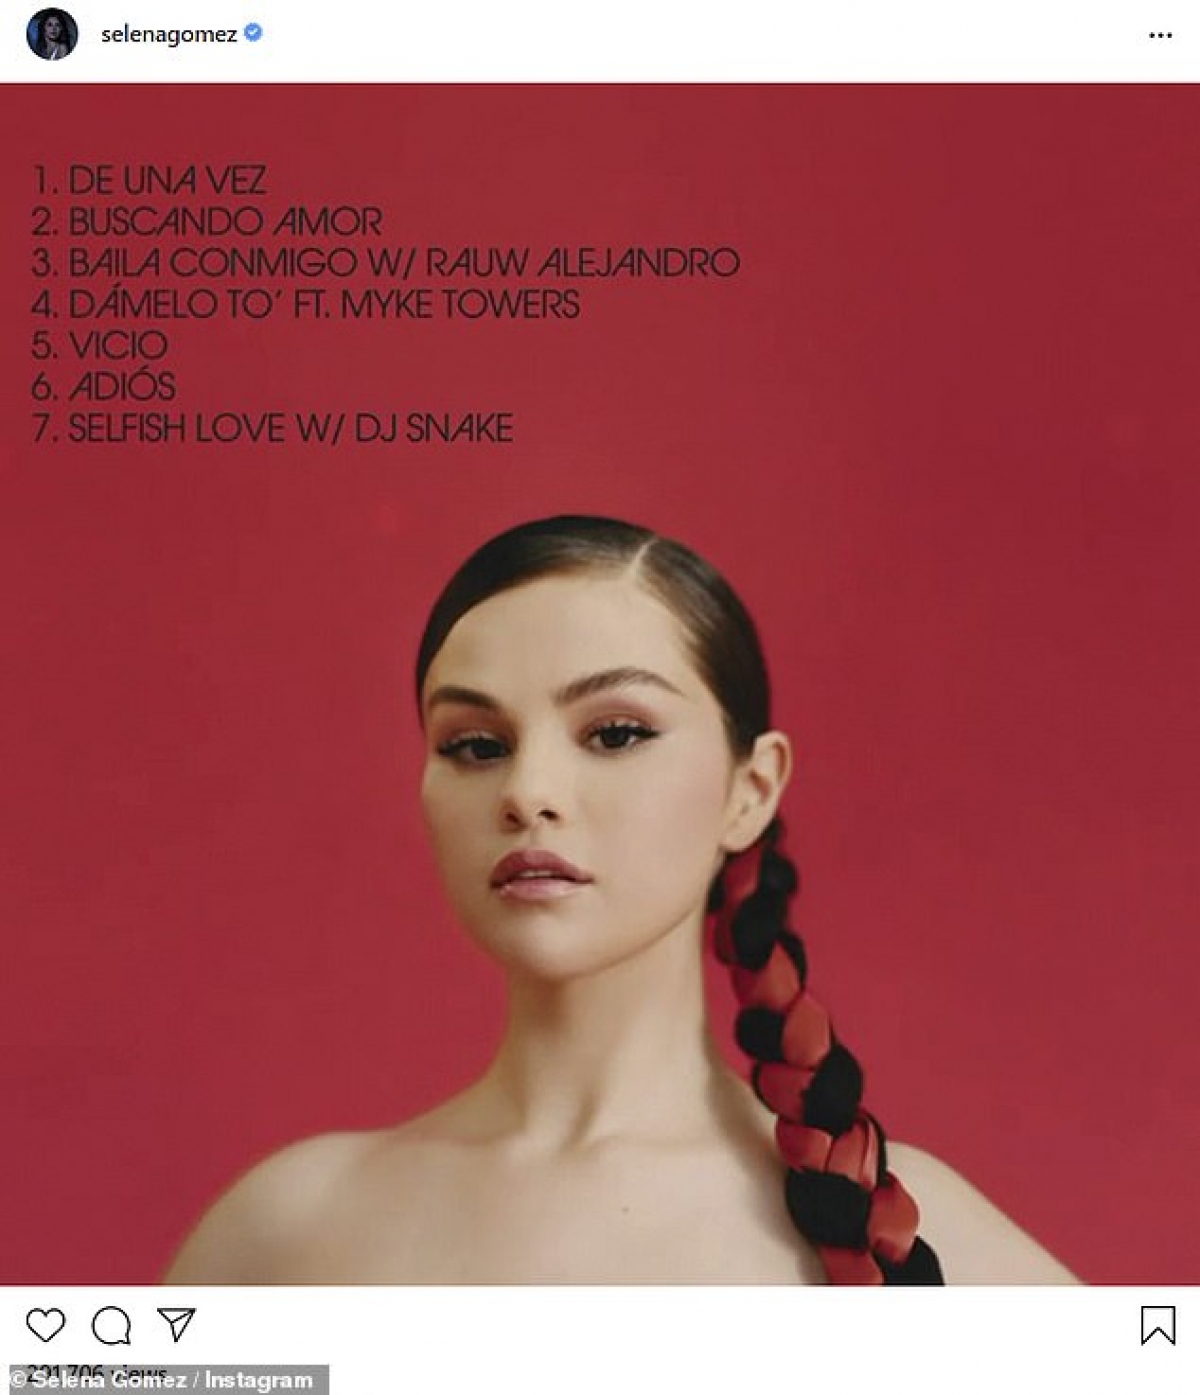 Hé lộ album mới, Selena Gomez tranh thủ khoe nhan sắc xinh đẹp rạng ngời - Ảnh 4.